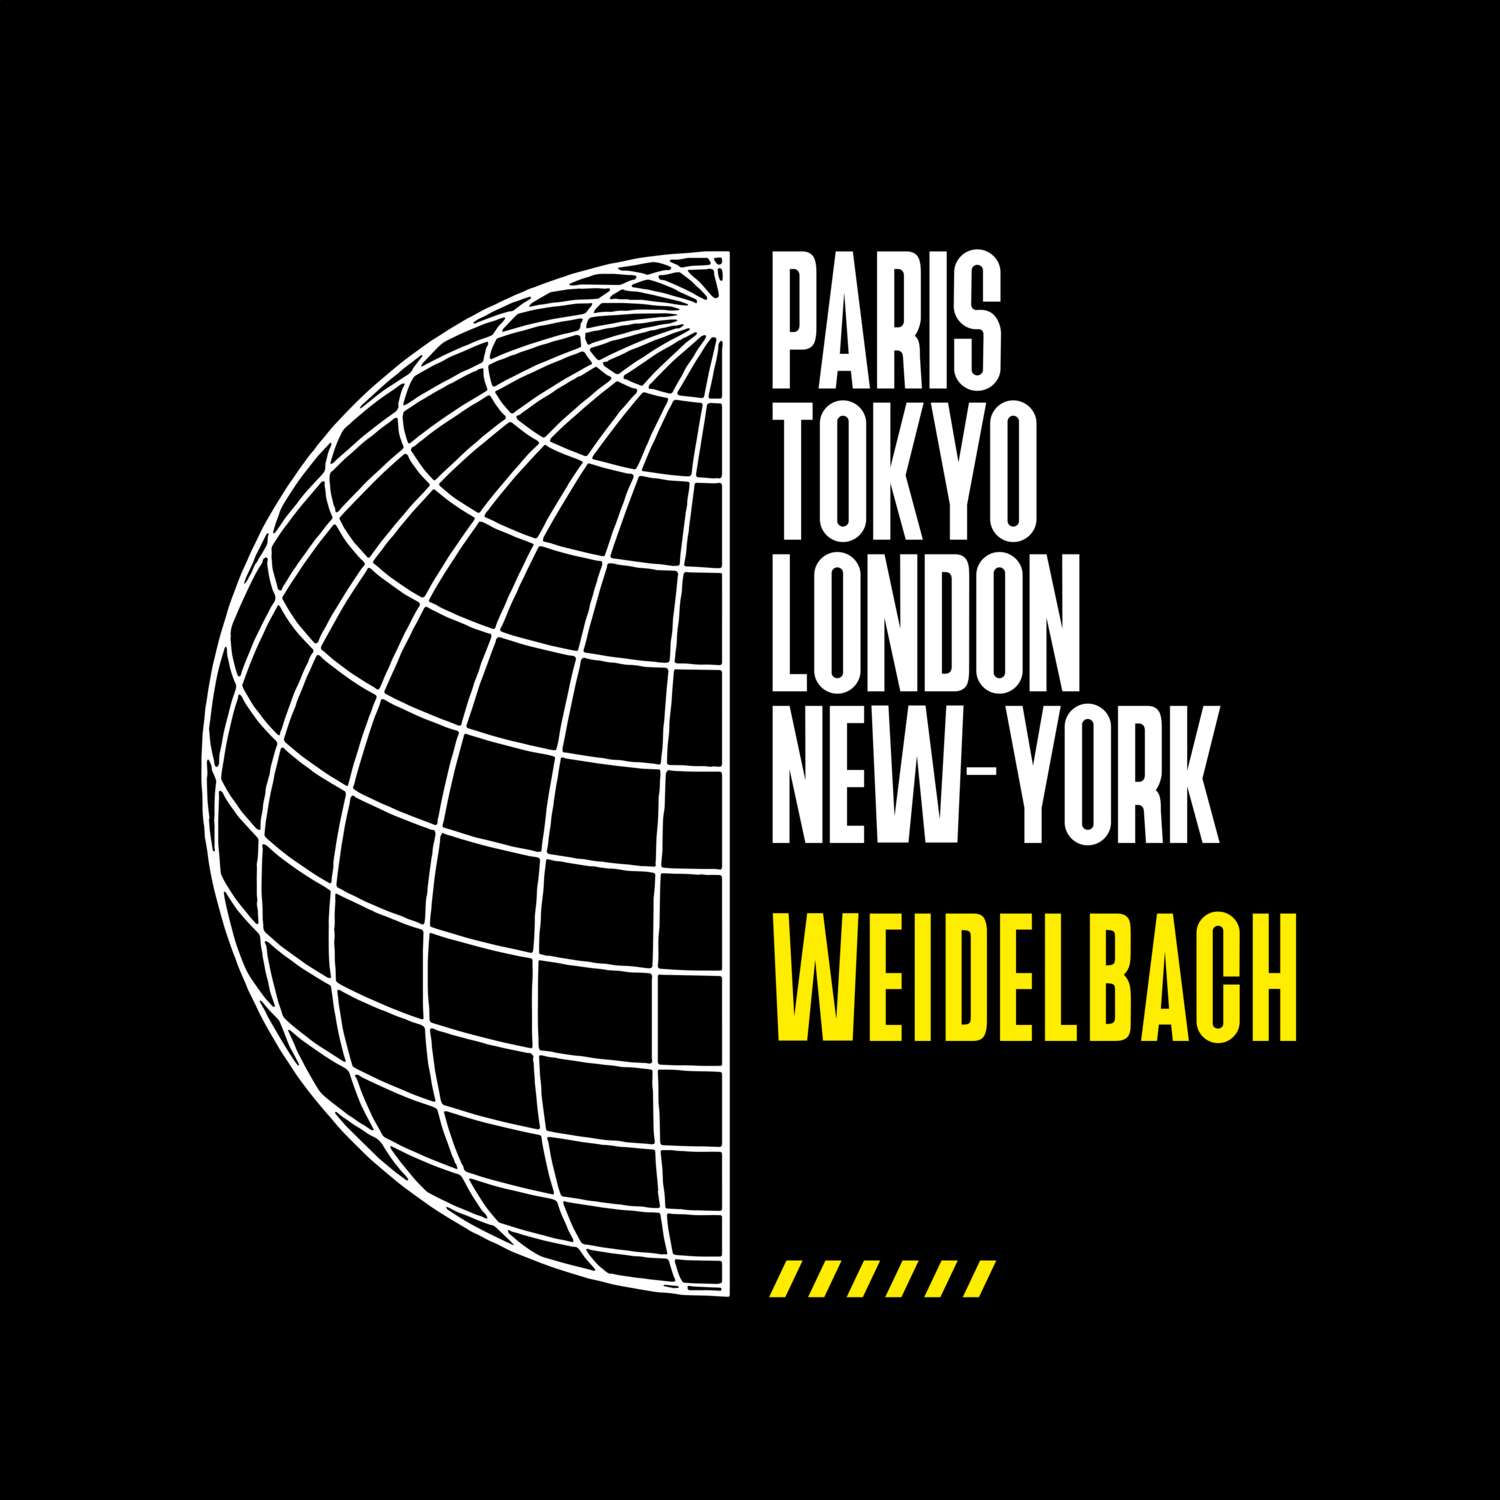 Weidelbach T-Shirt »Paris Tokyo London«